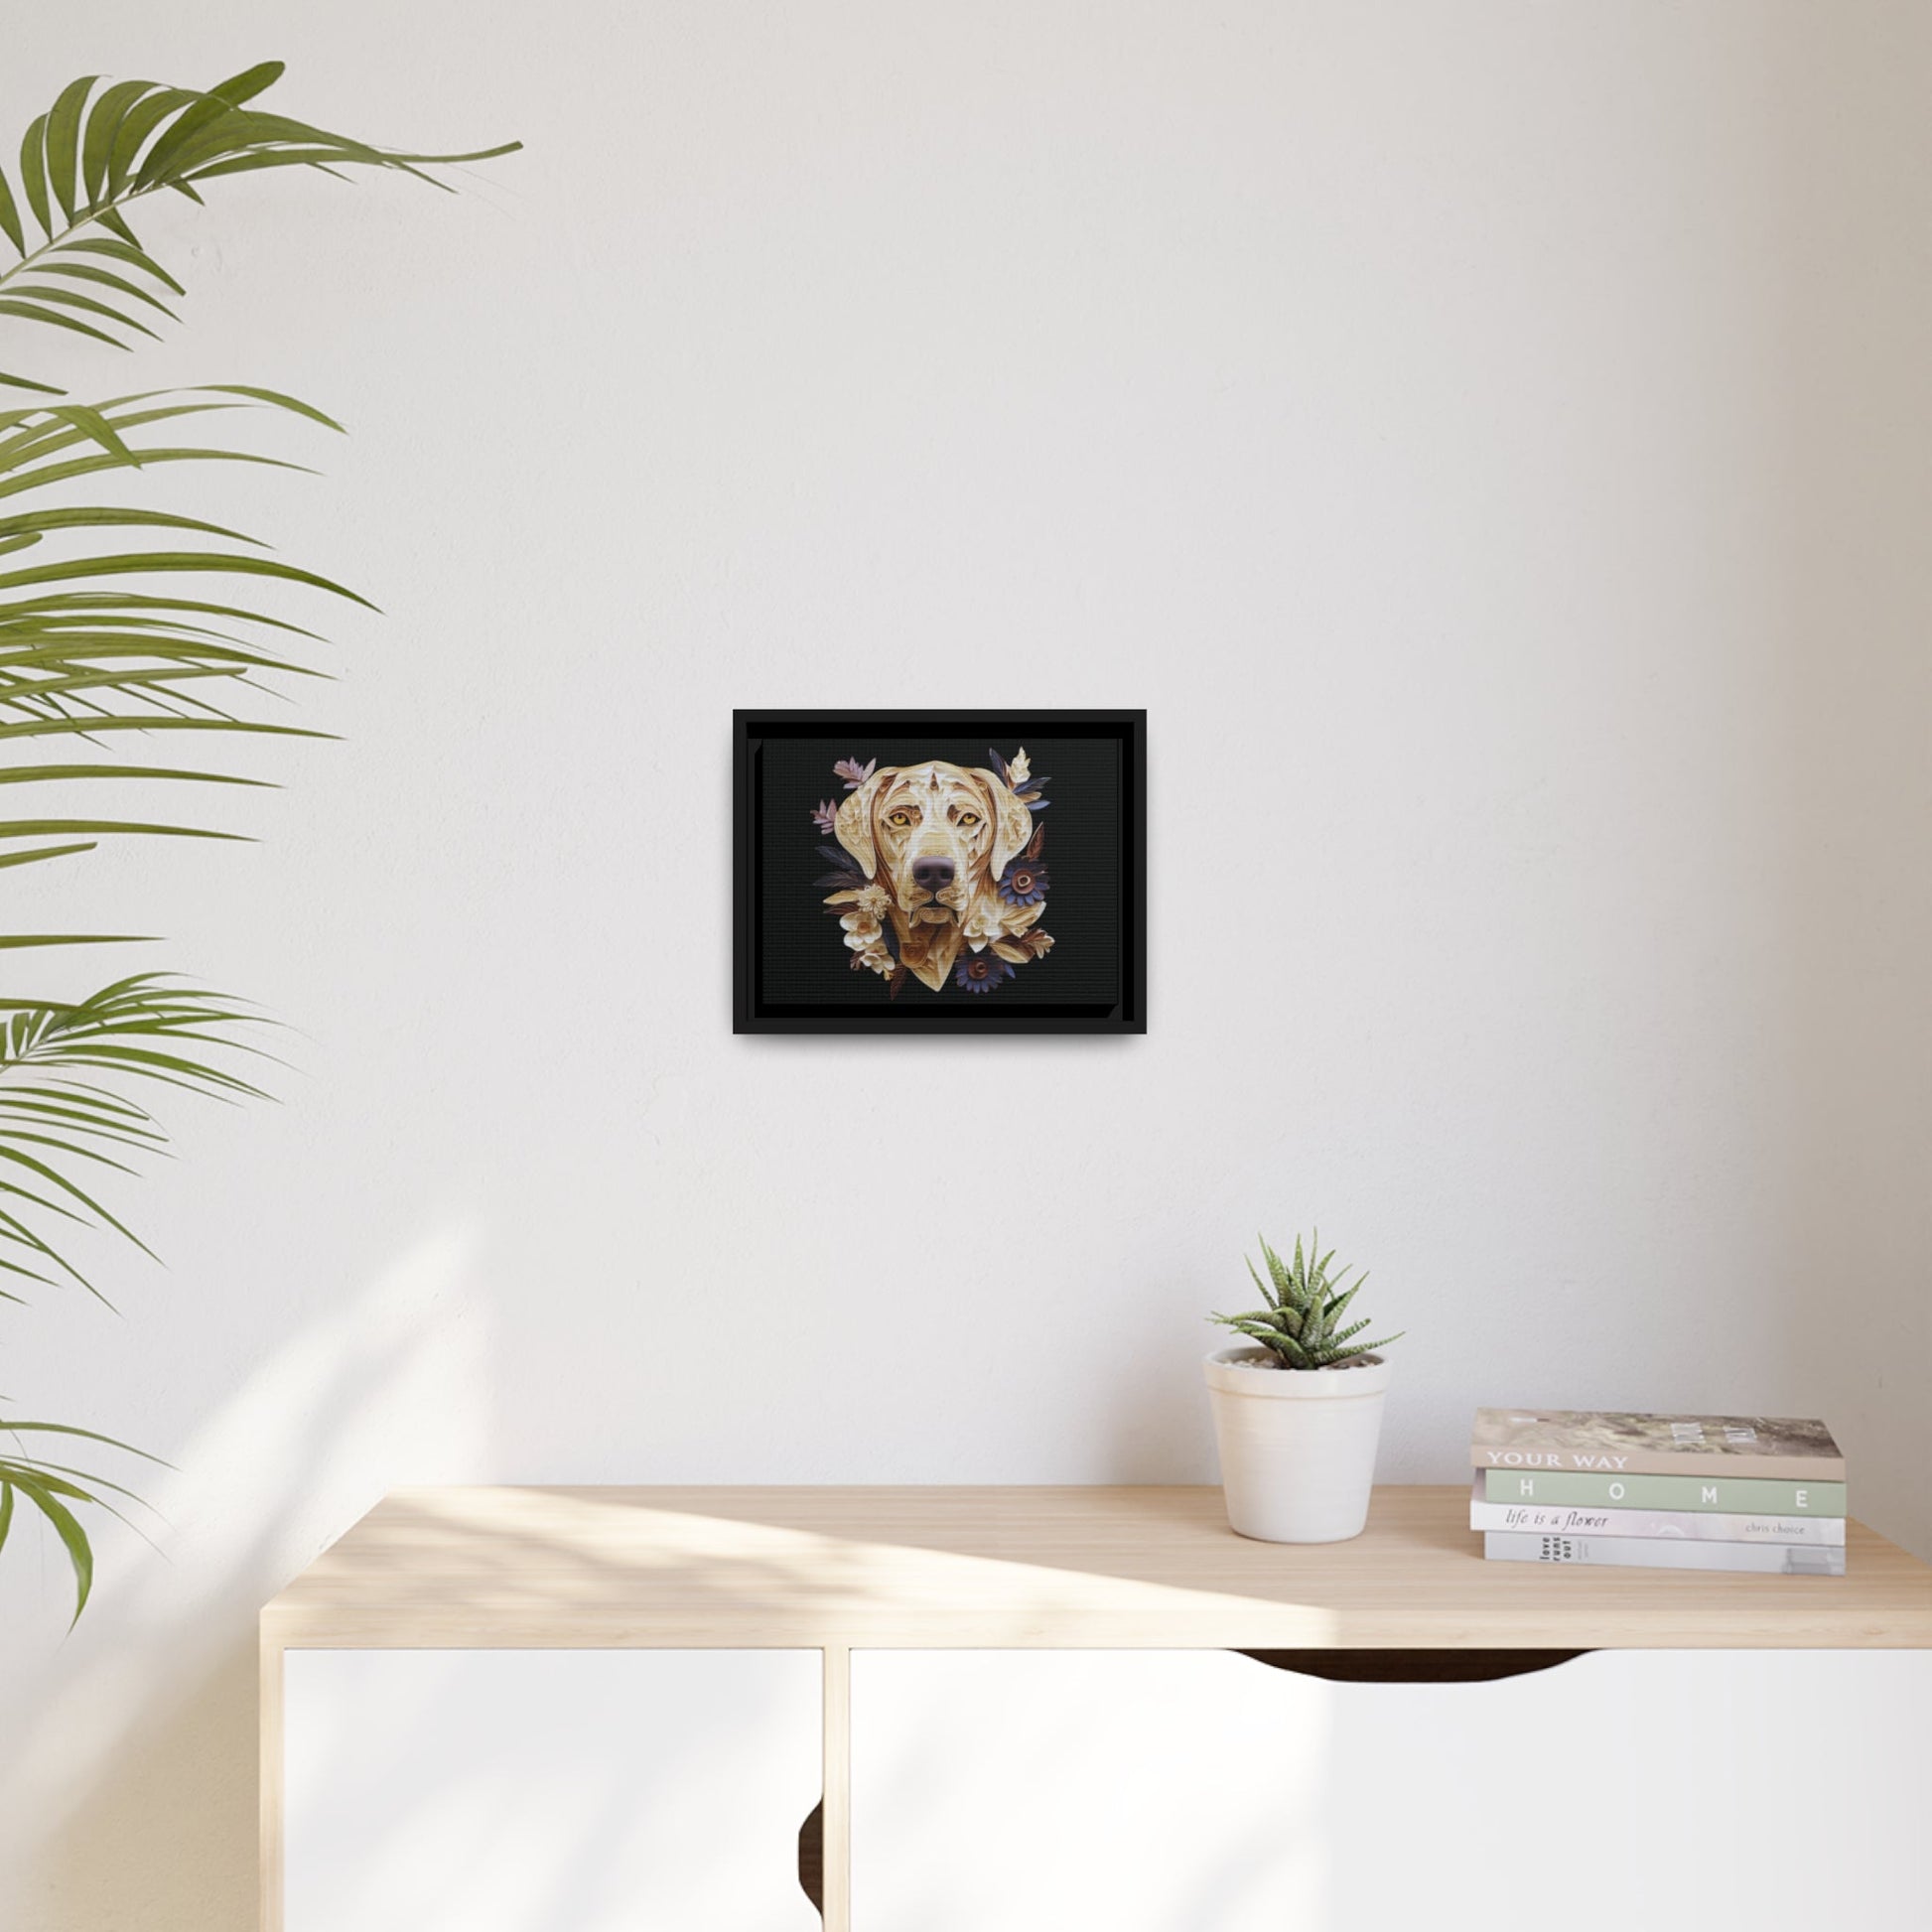 Matte Black Canvas Picture Frame of Quilled Labrador Design - Hobbster